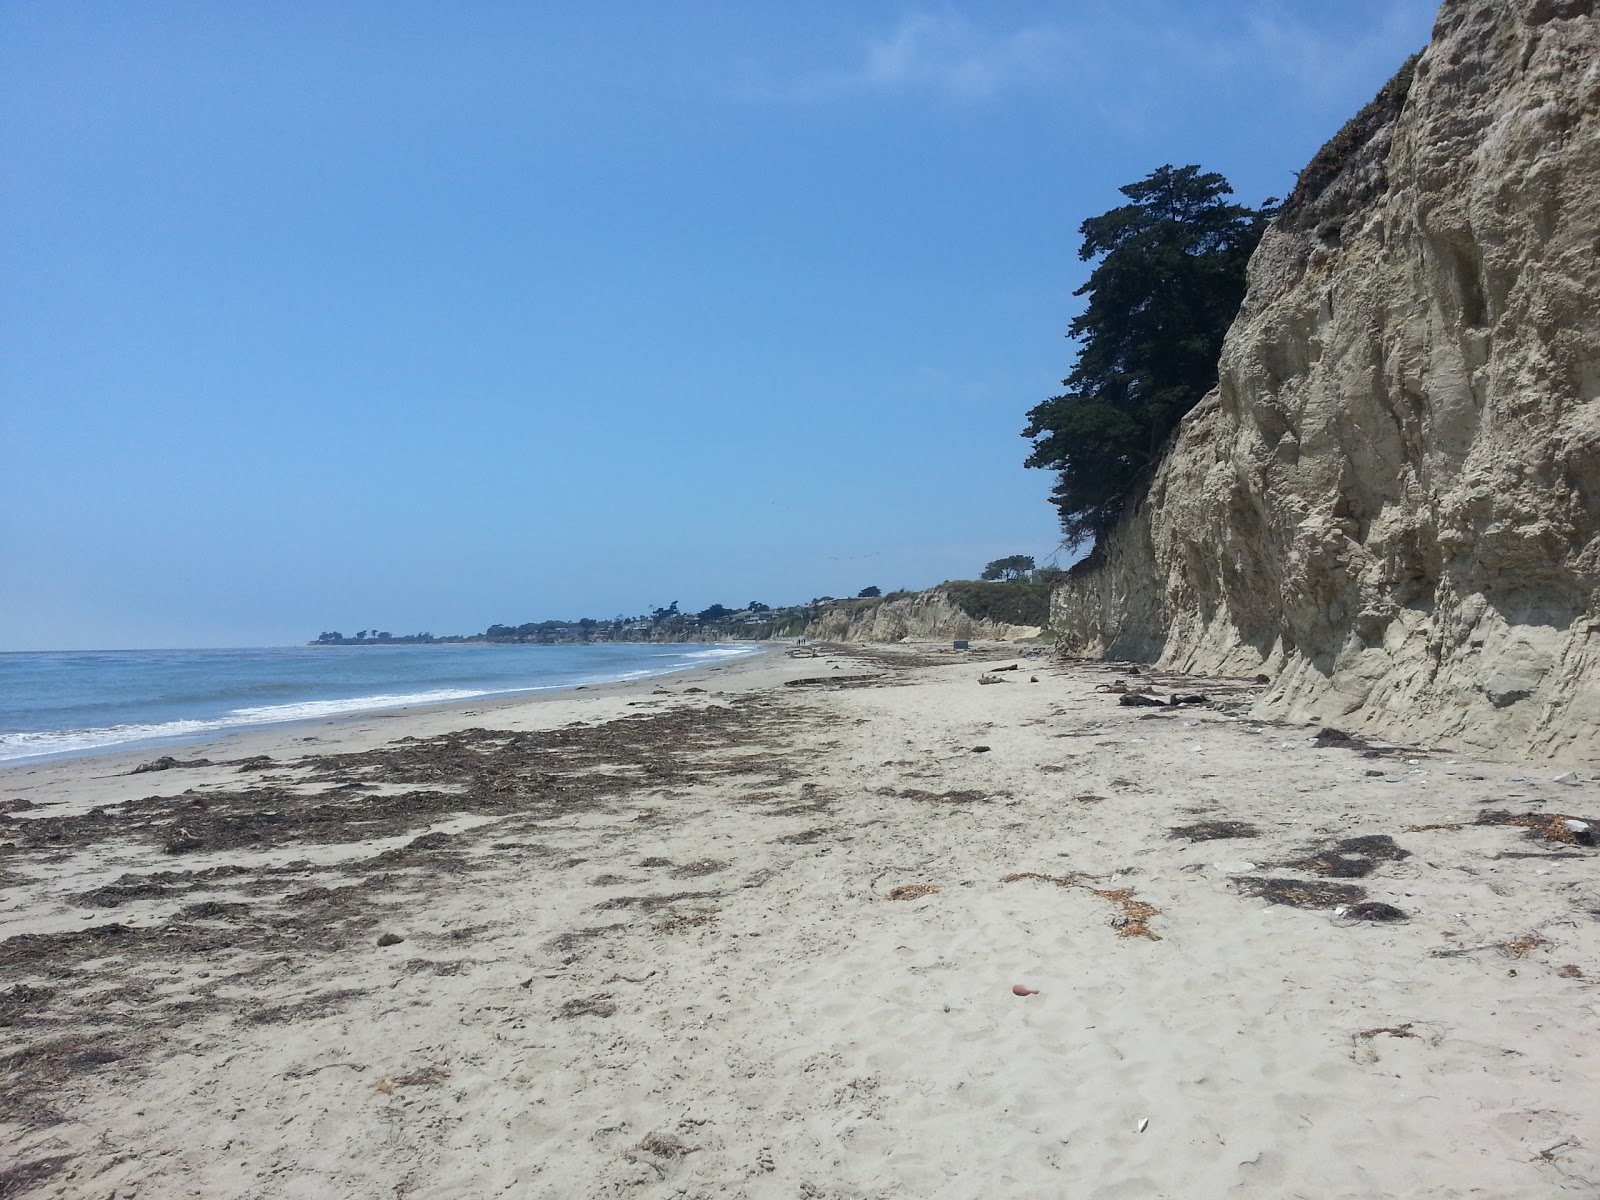 Foto de Depressions Beach IVKC com areia brilhante superfície